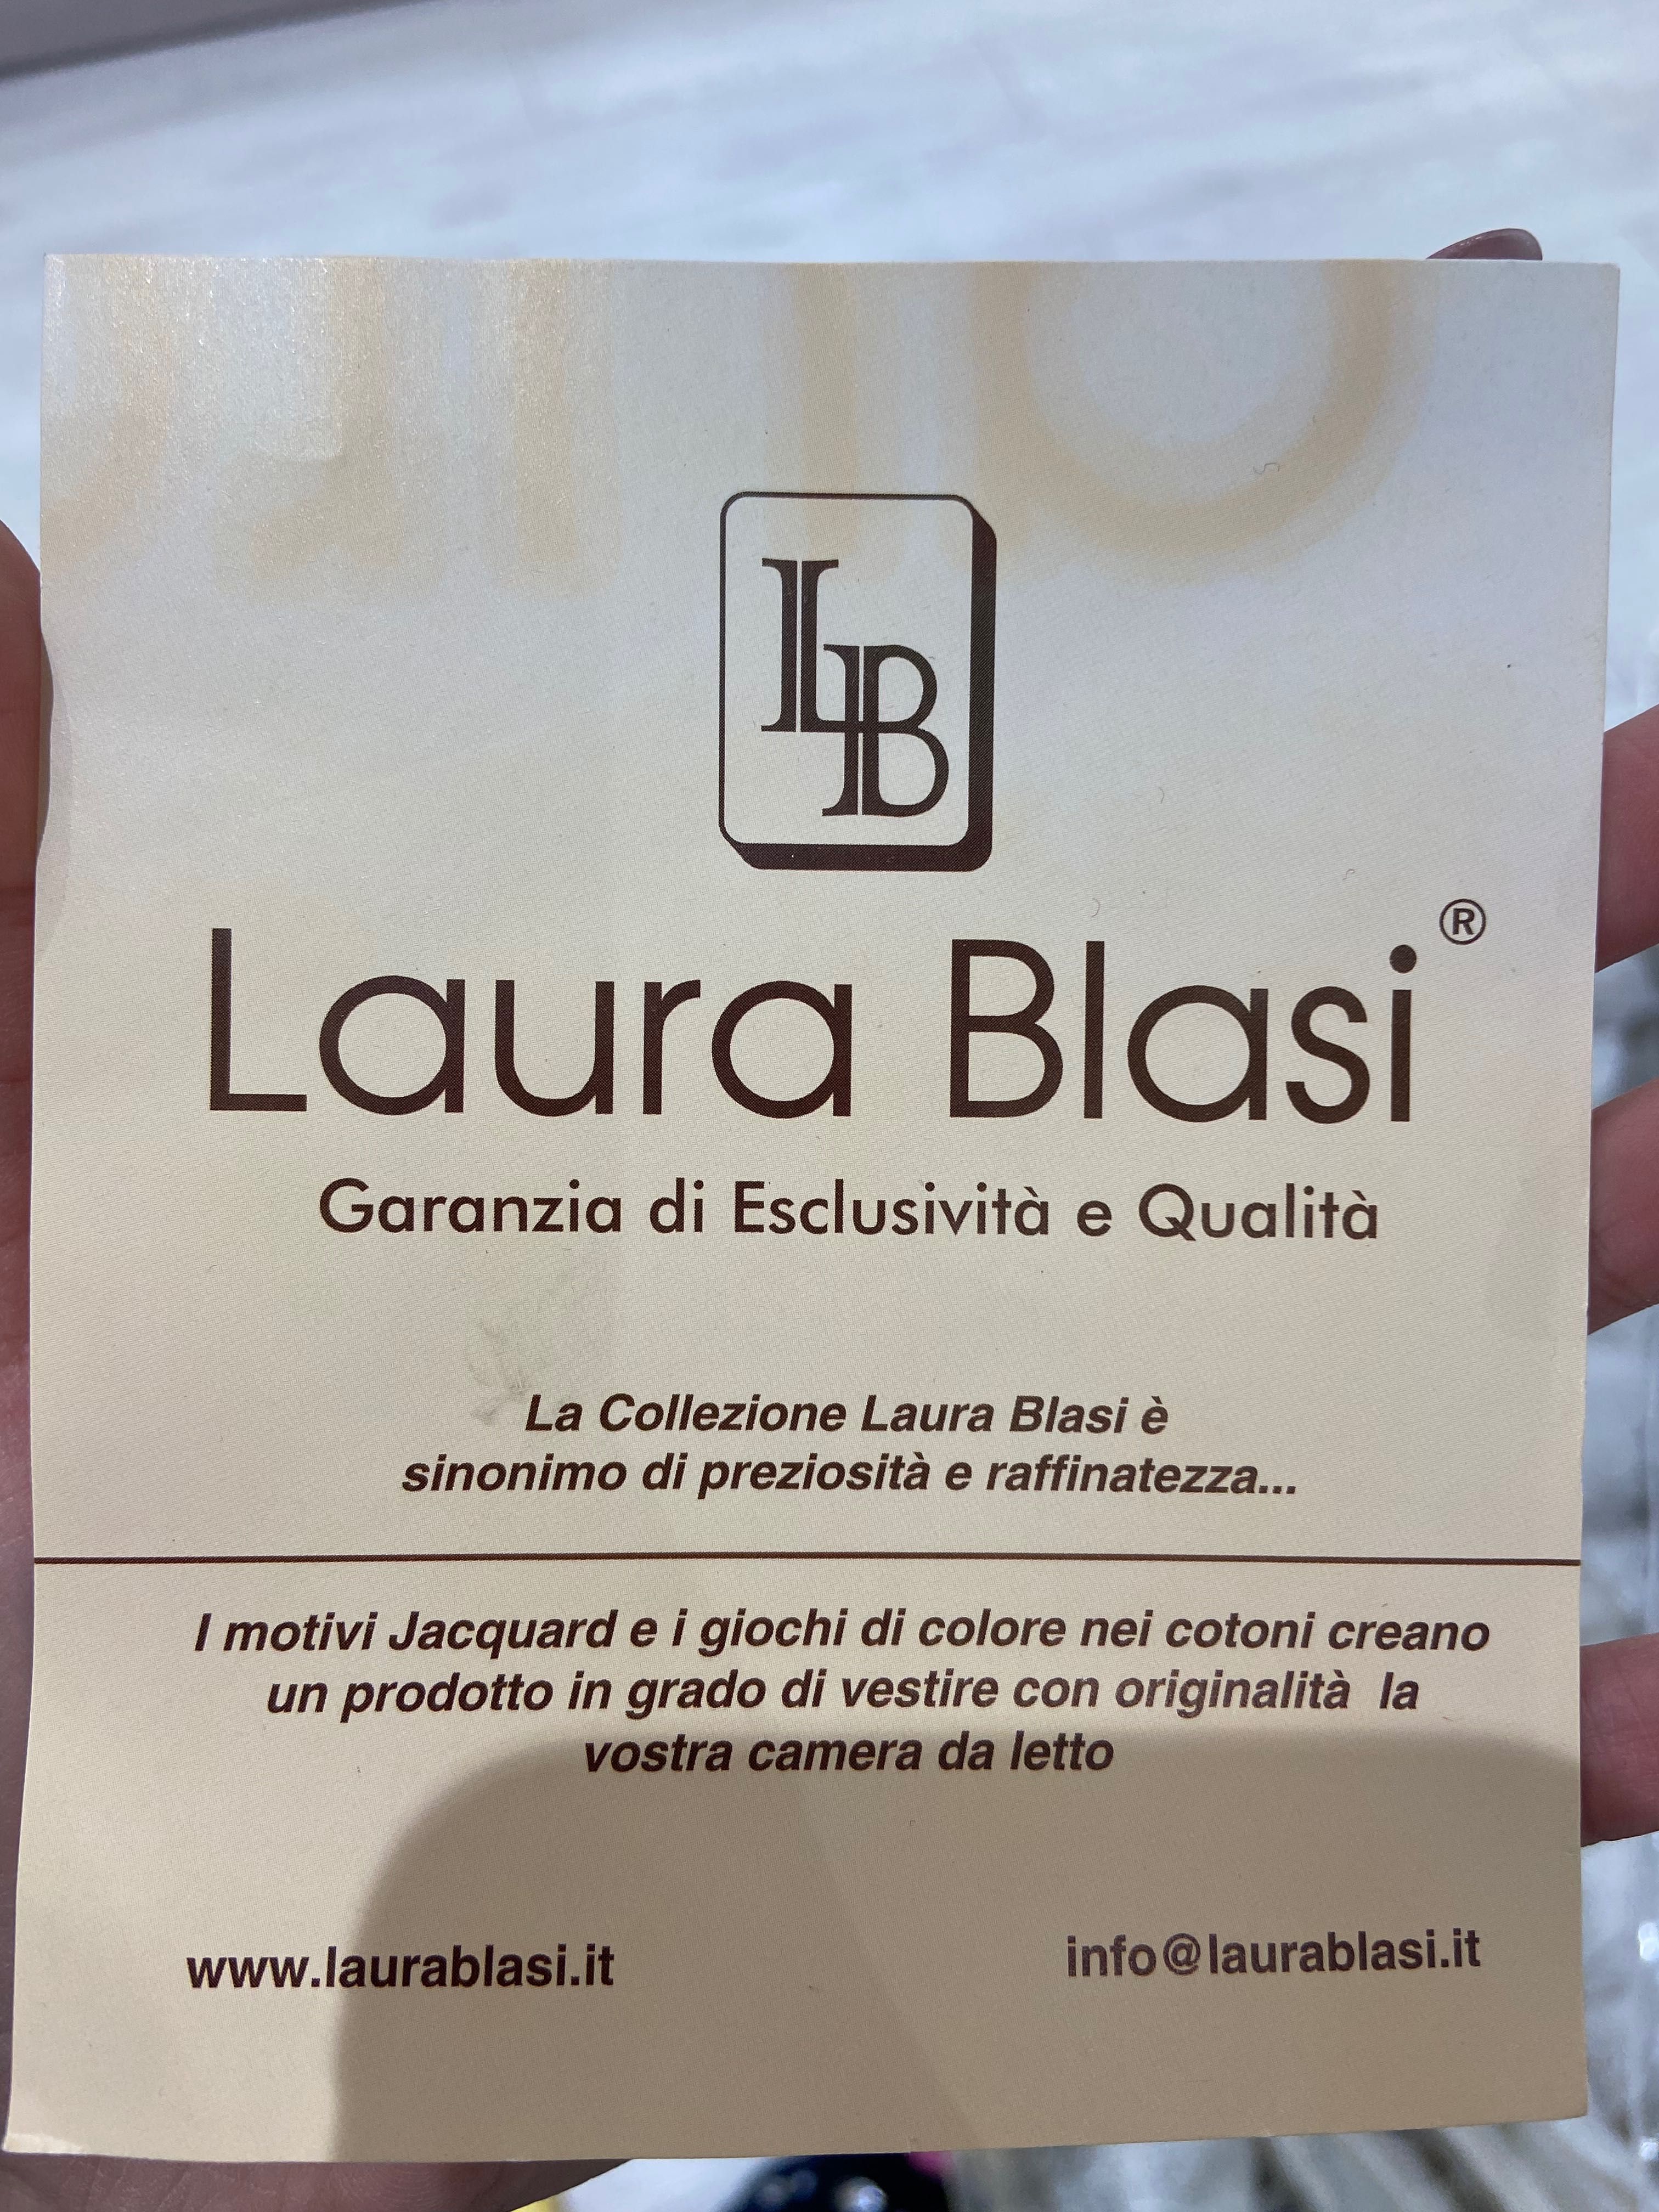 Луксозно италианско покривало за спалня Laura Blasi